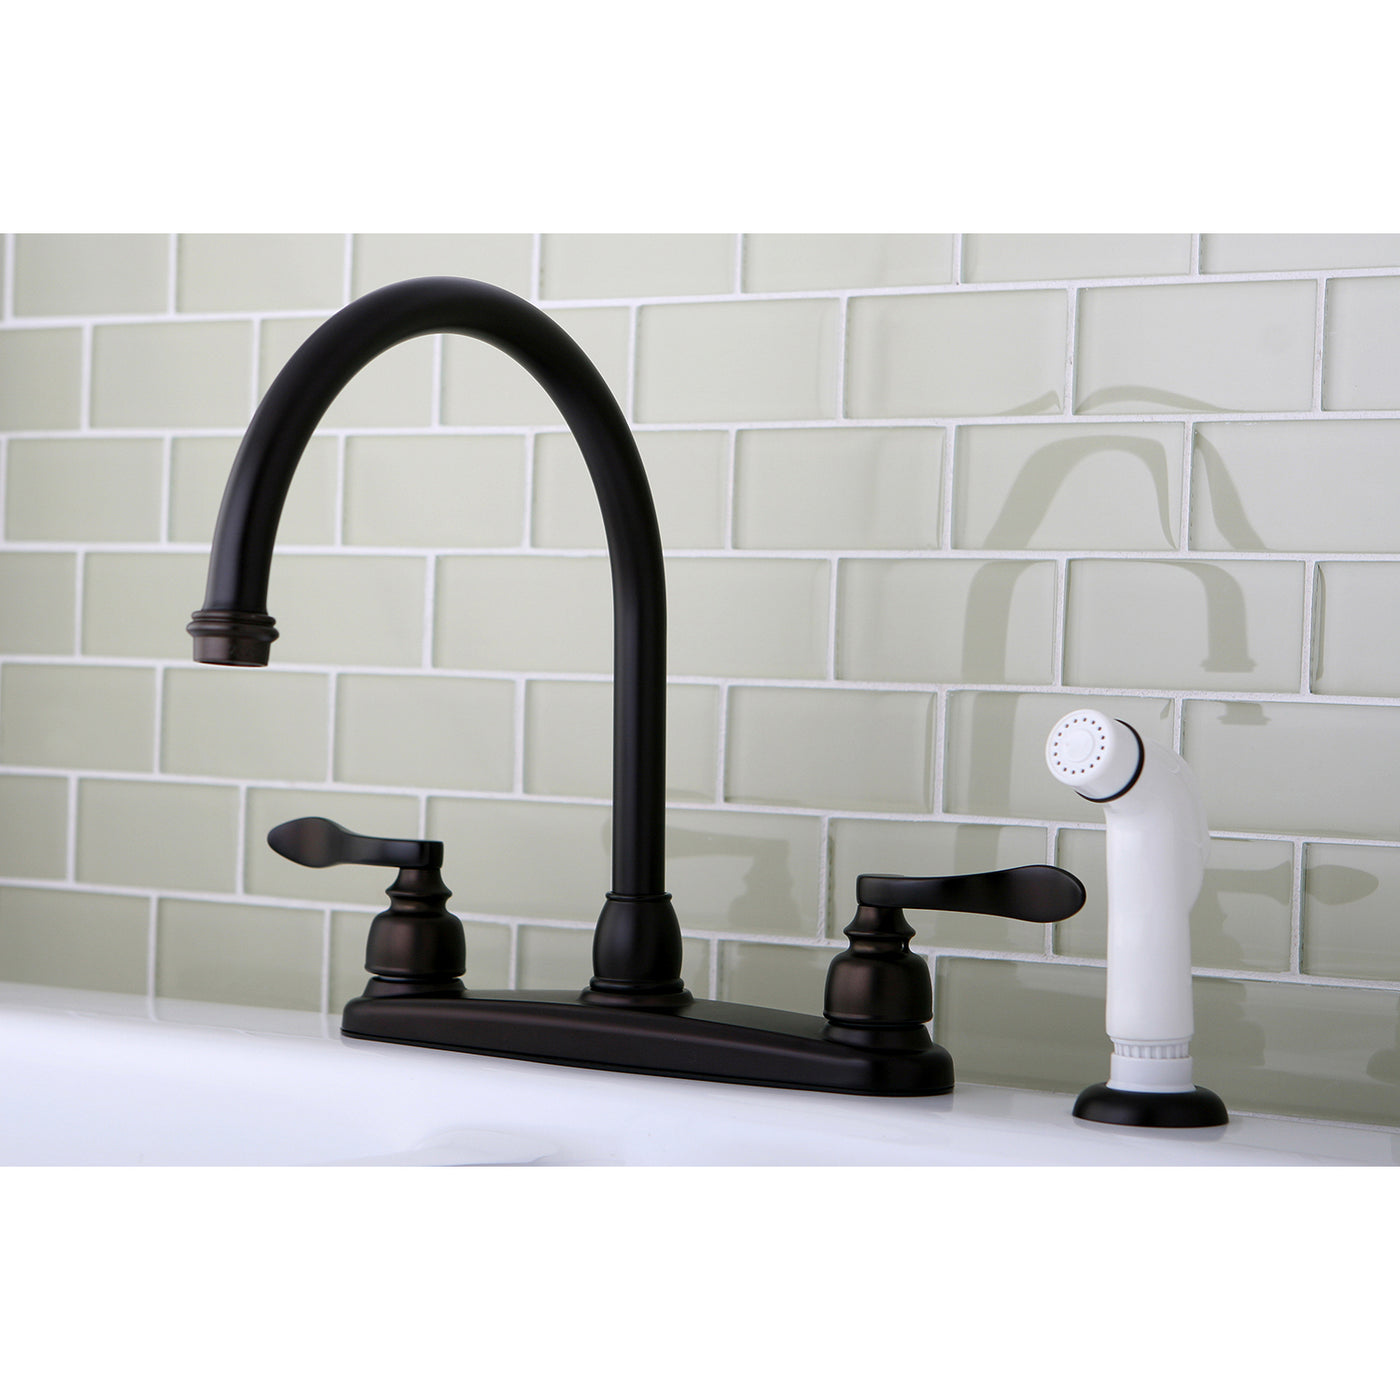 Elements of Design EB8795NFL Centerset Kitchen Faucet, Oil Rubbed Bronze